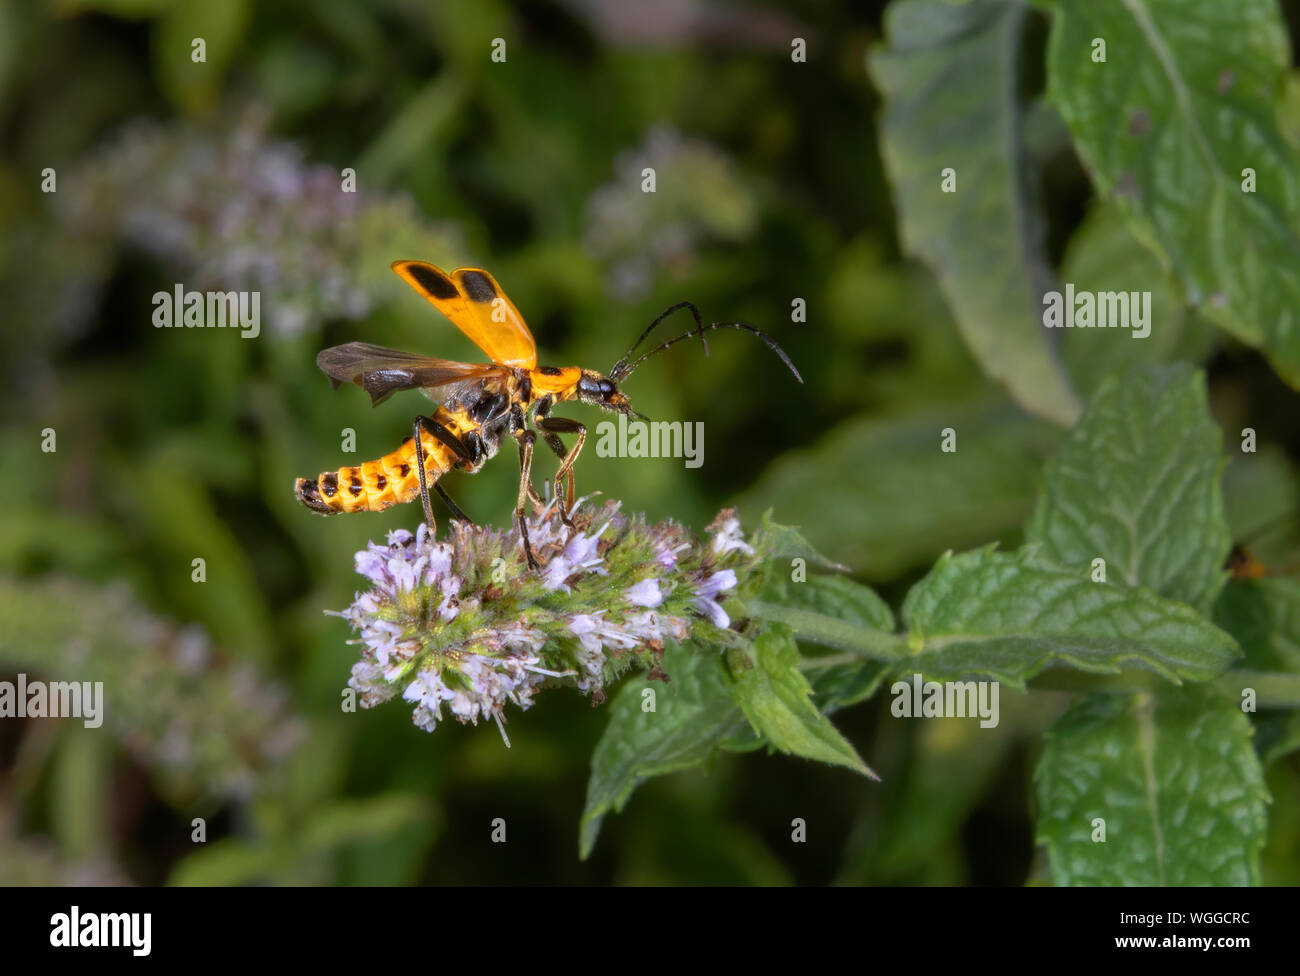 Houghton (Chauliognathus pennsylvanicus Soldat Beetle) décollant d'une fleur de menthe, Iowa, États-Unis. Banque D'Images